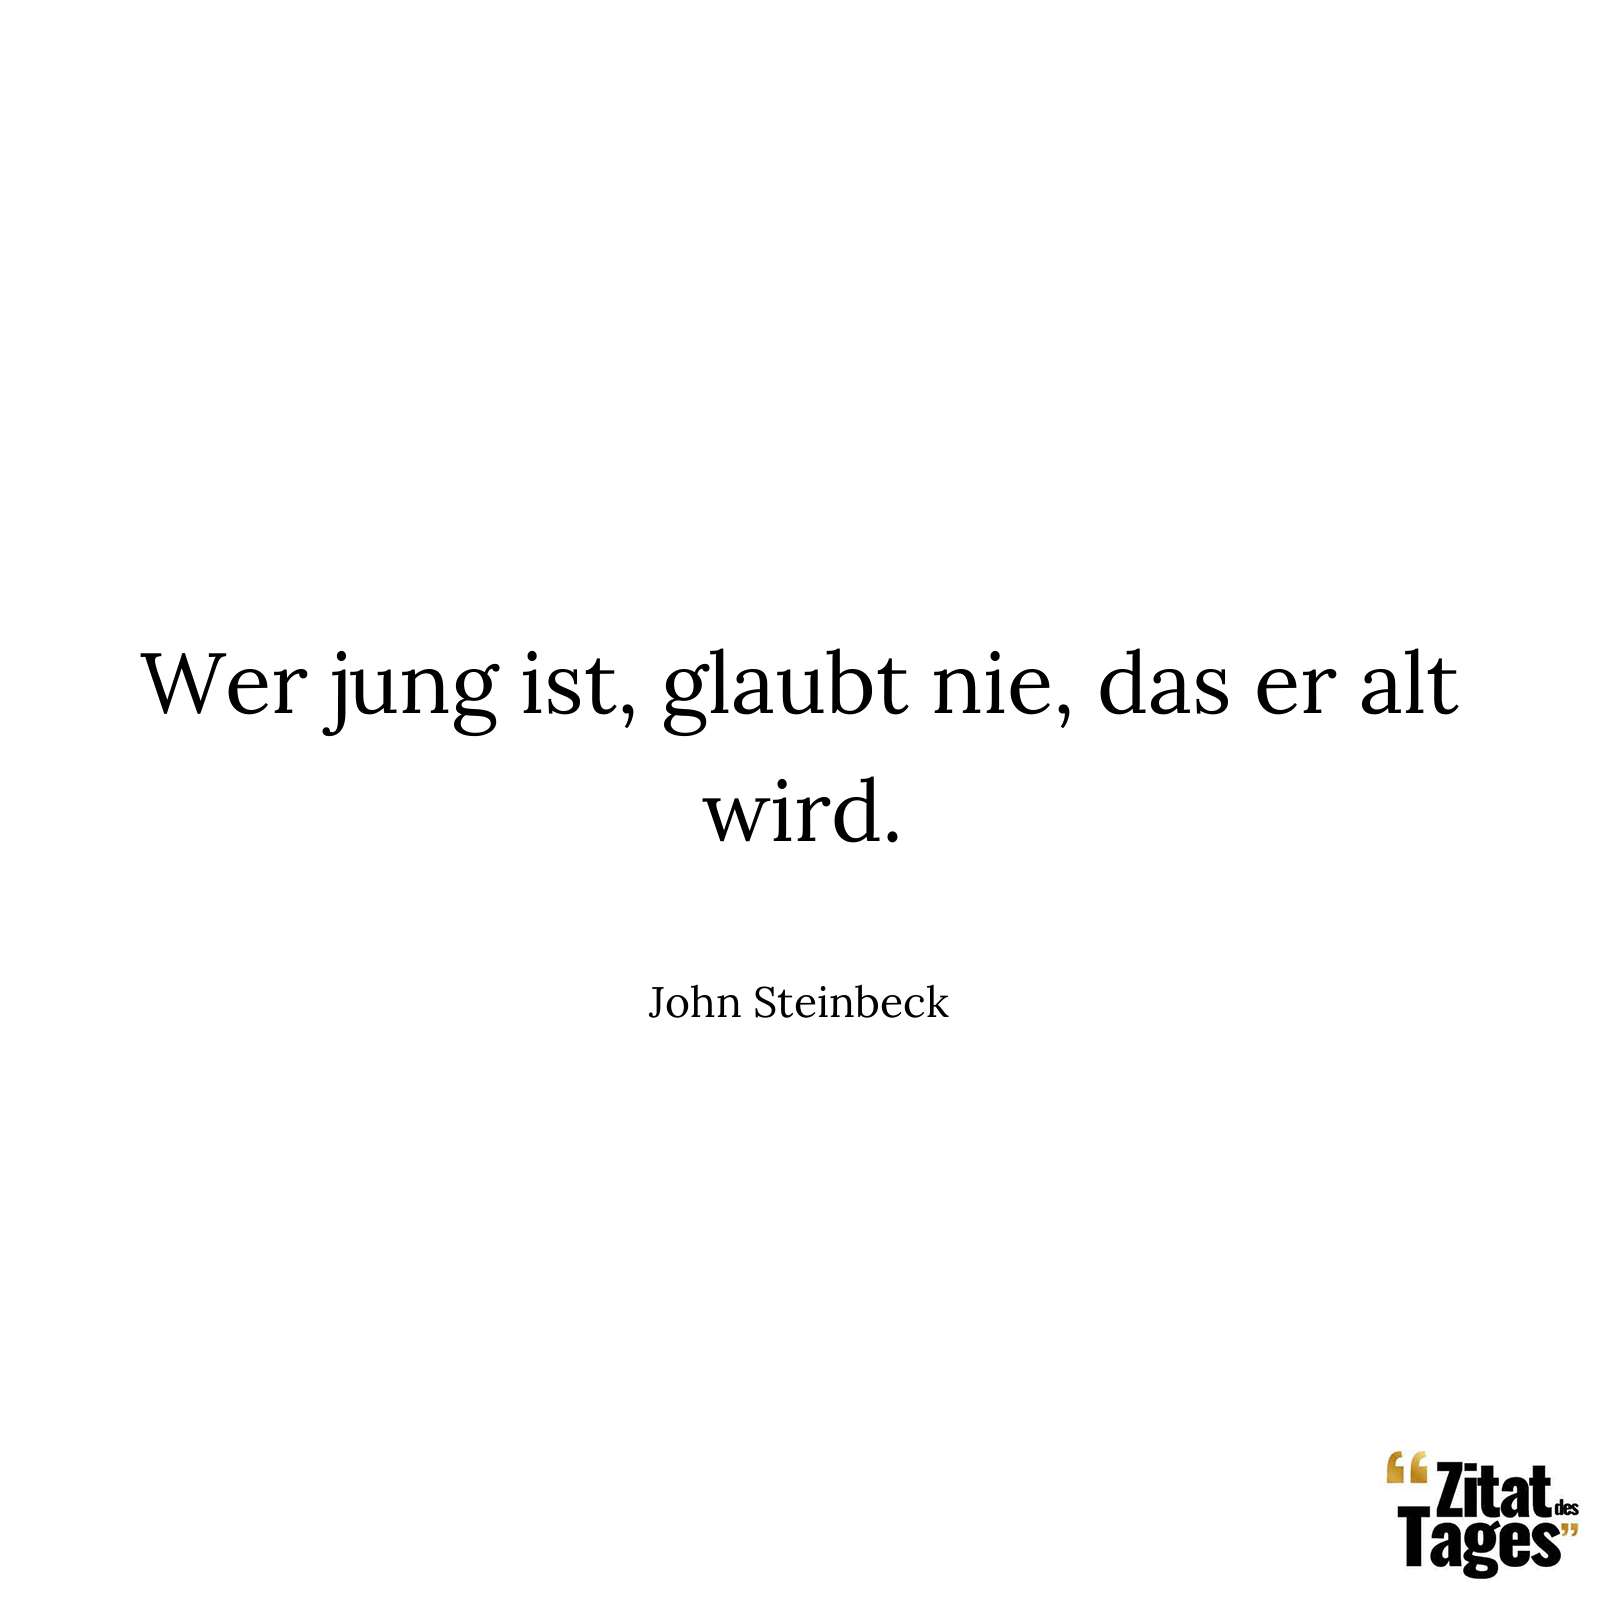 Wer jung ist, glaubt nie, das er alt wird. - John Steinbeck